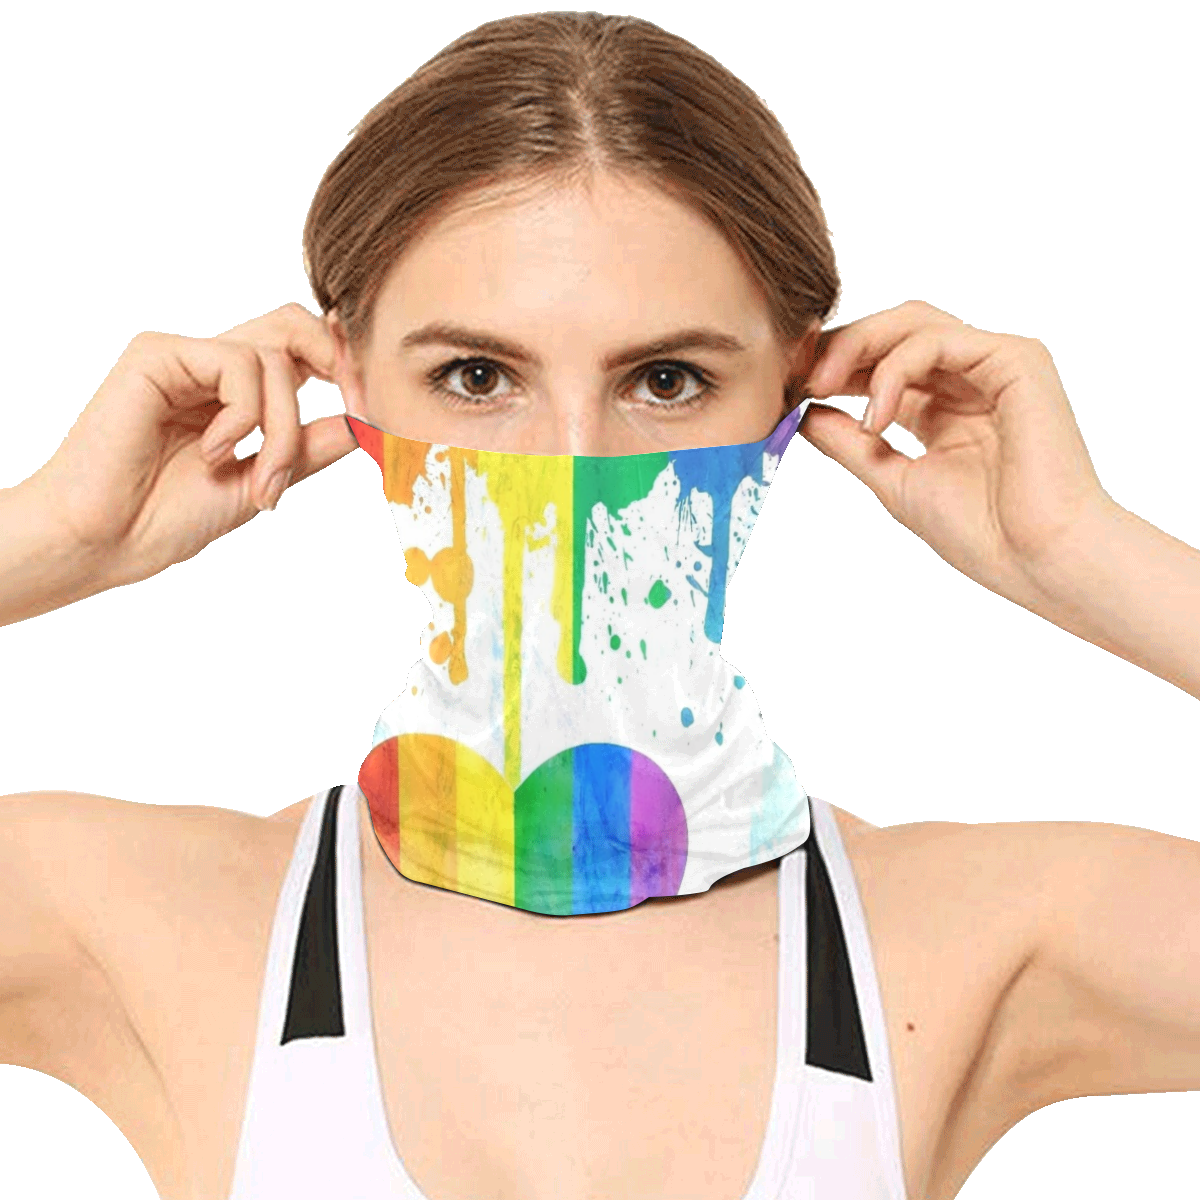 Royal Rainbow by Artdream Multifunctional Headwear